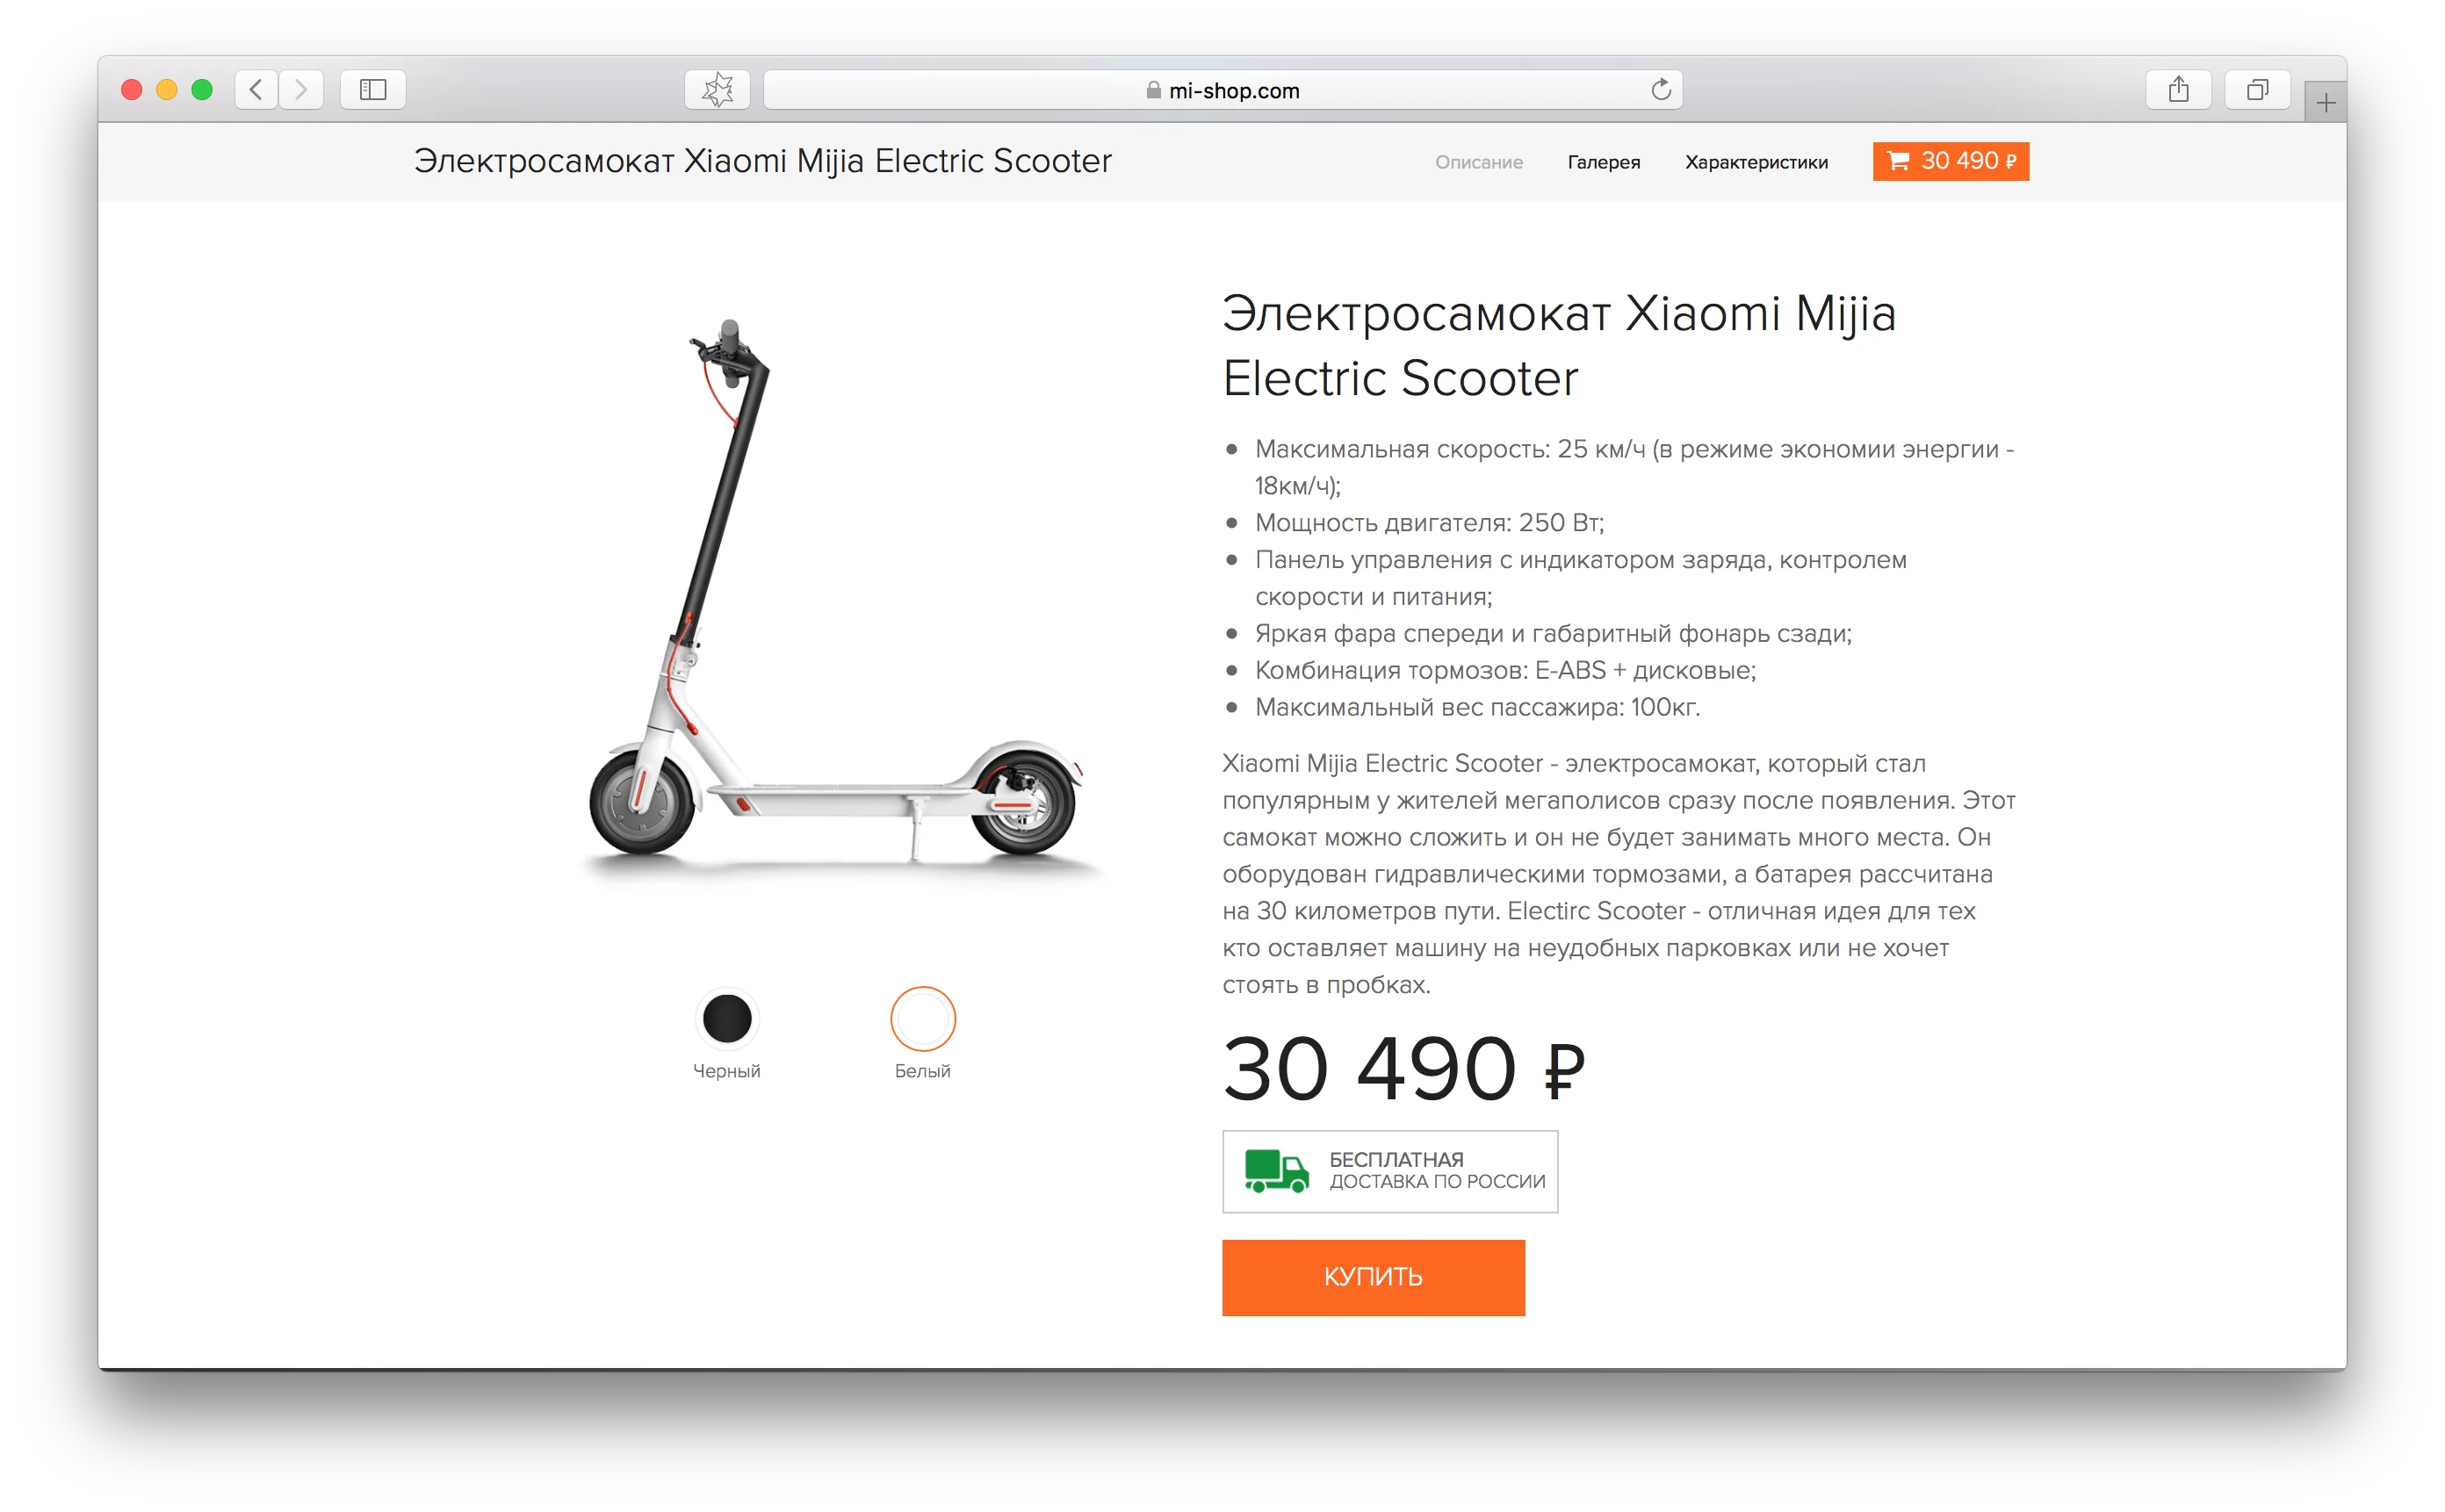 Дорого! В России официально продается электросамокат от Xiaomi